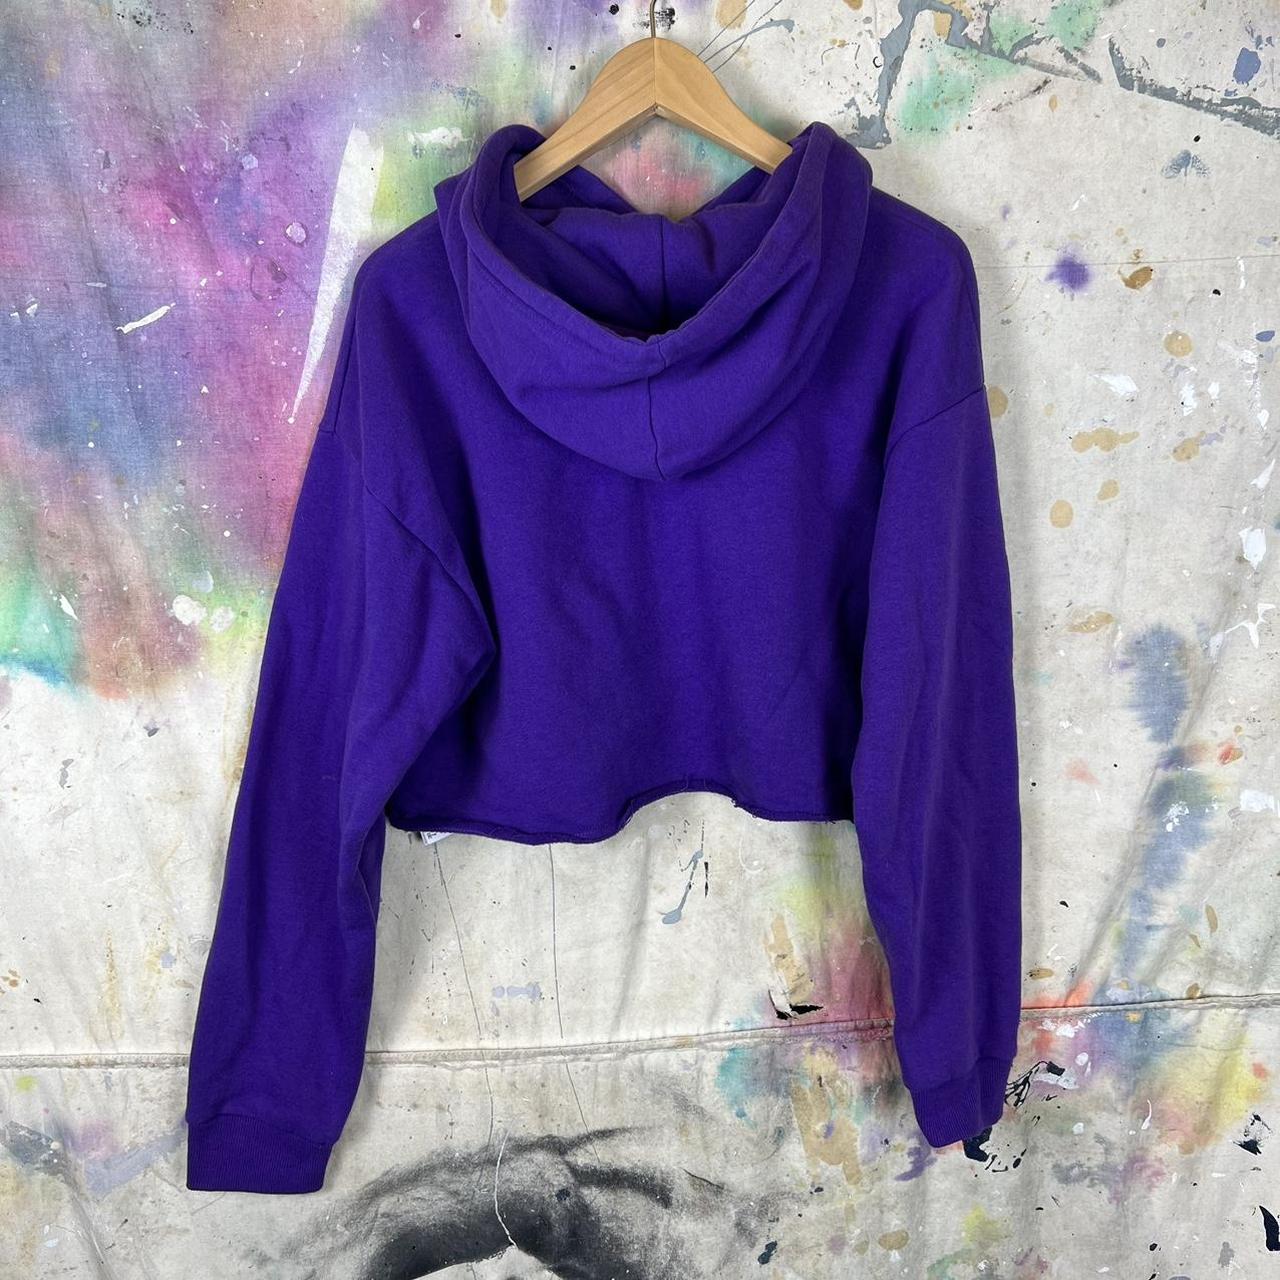 Alo cropped lavender bae hoodie in medium - Depop